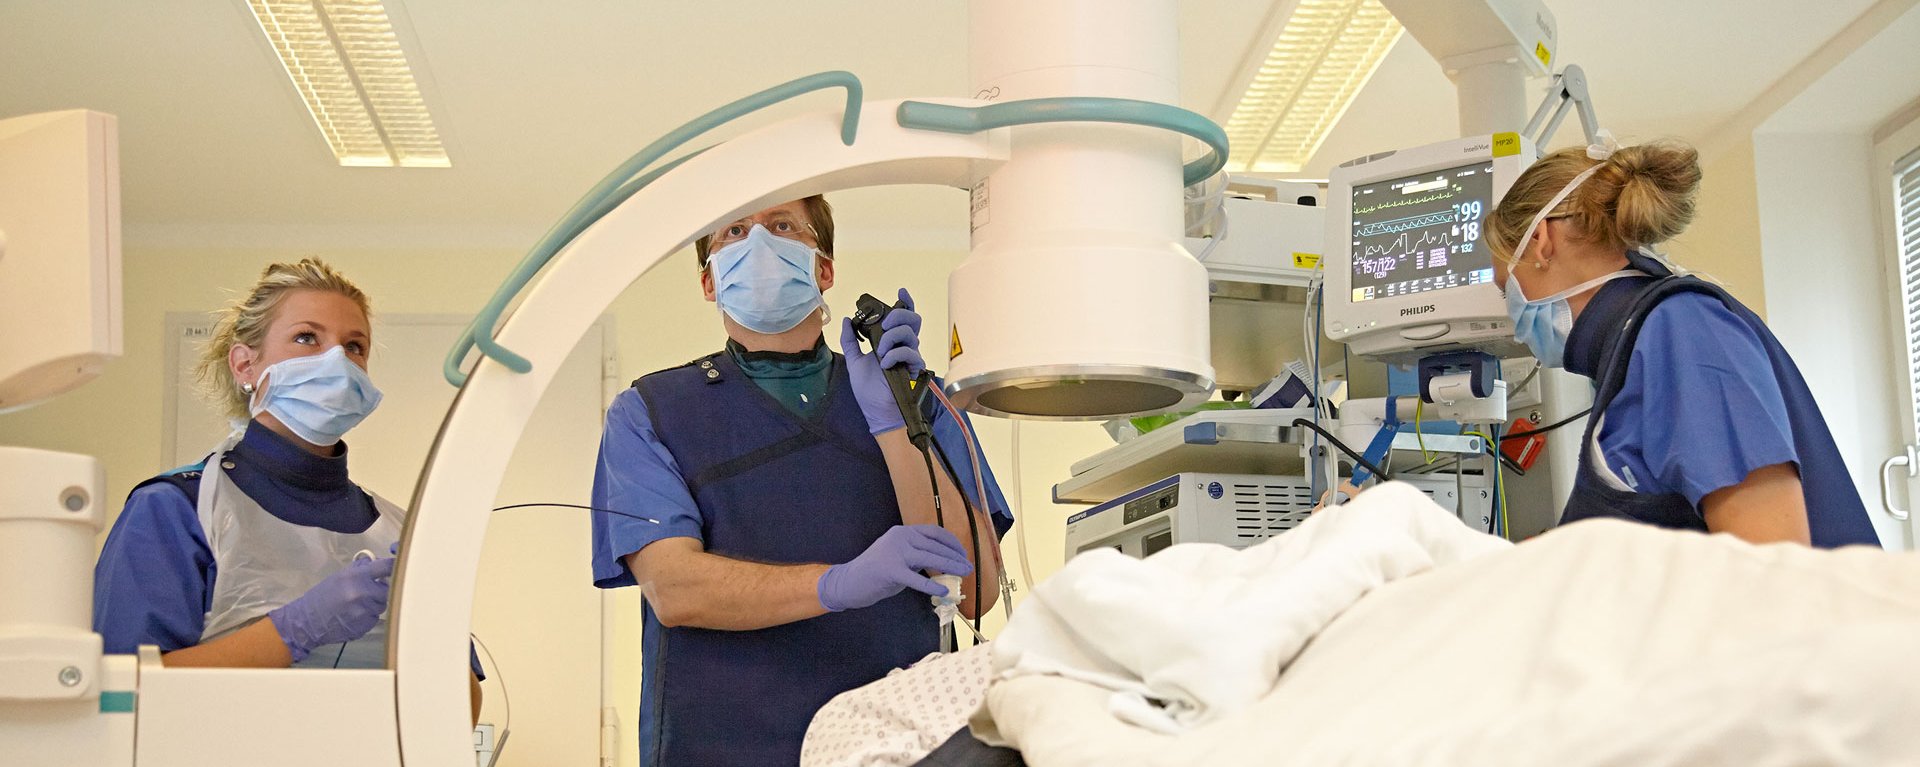 Team des Klinikverbunds Allgäu führt eine Bronchioskopie mit Hilfe neuester medizinischer Technik durch